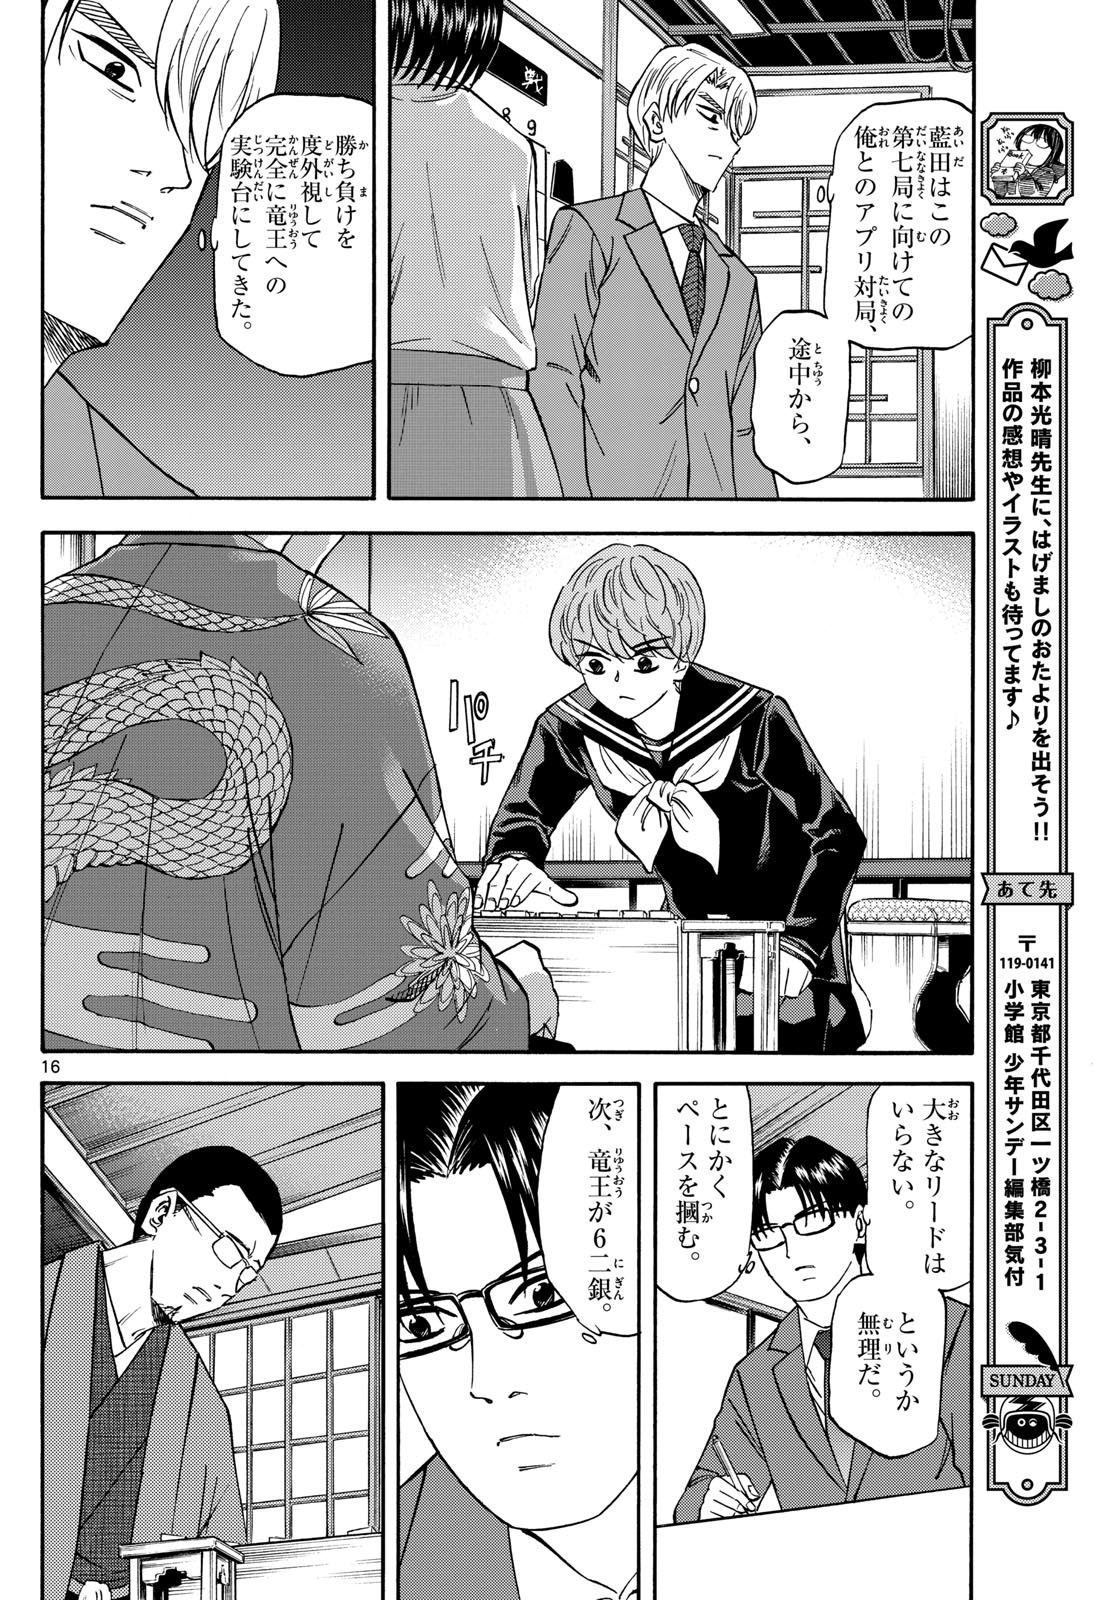 Tatsu to Ichigo - Chapter 175 - Page 16